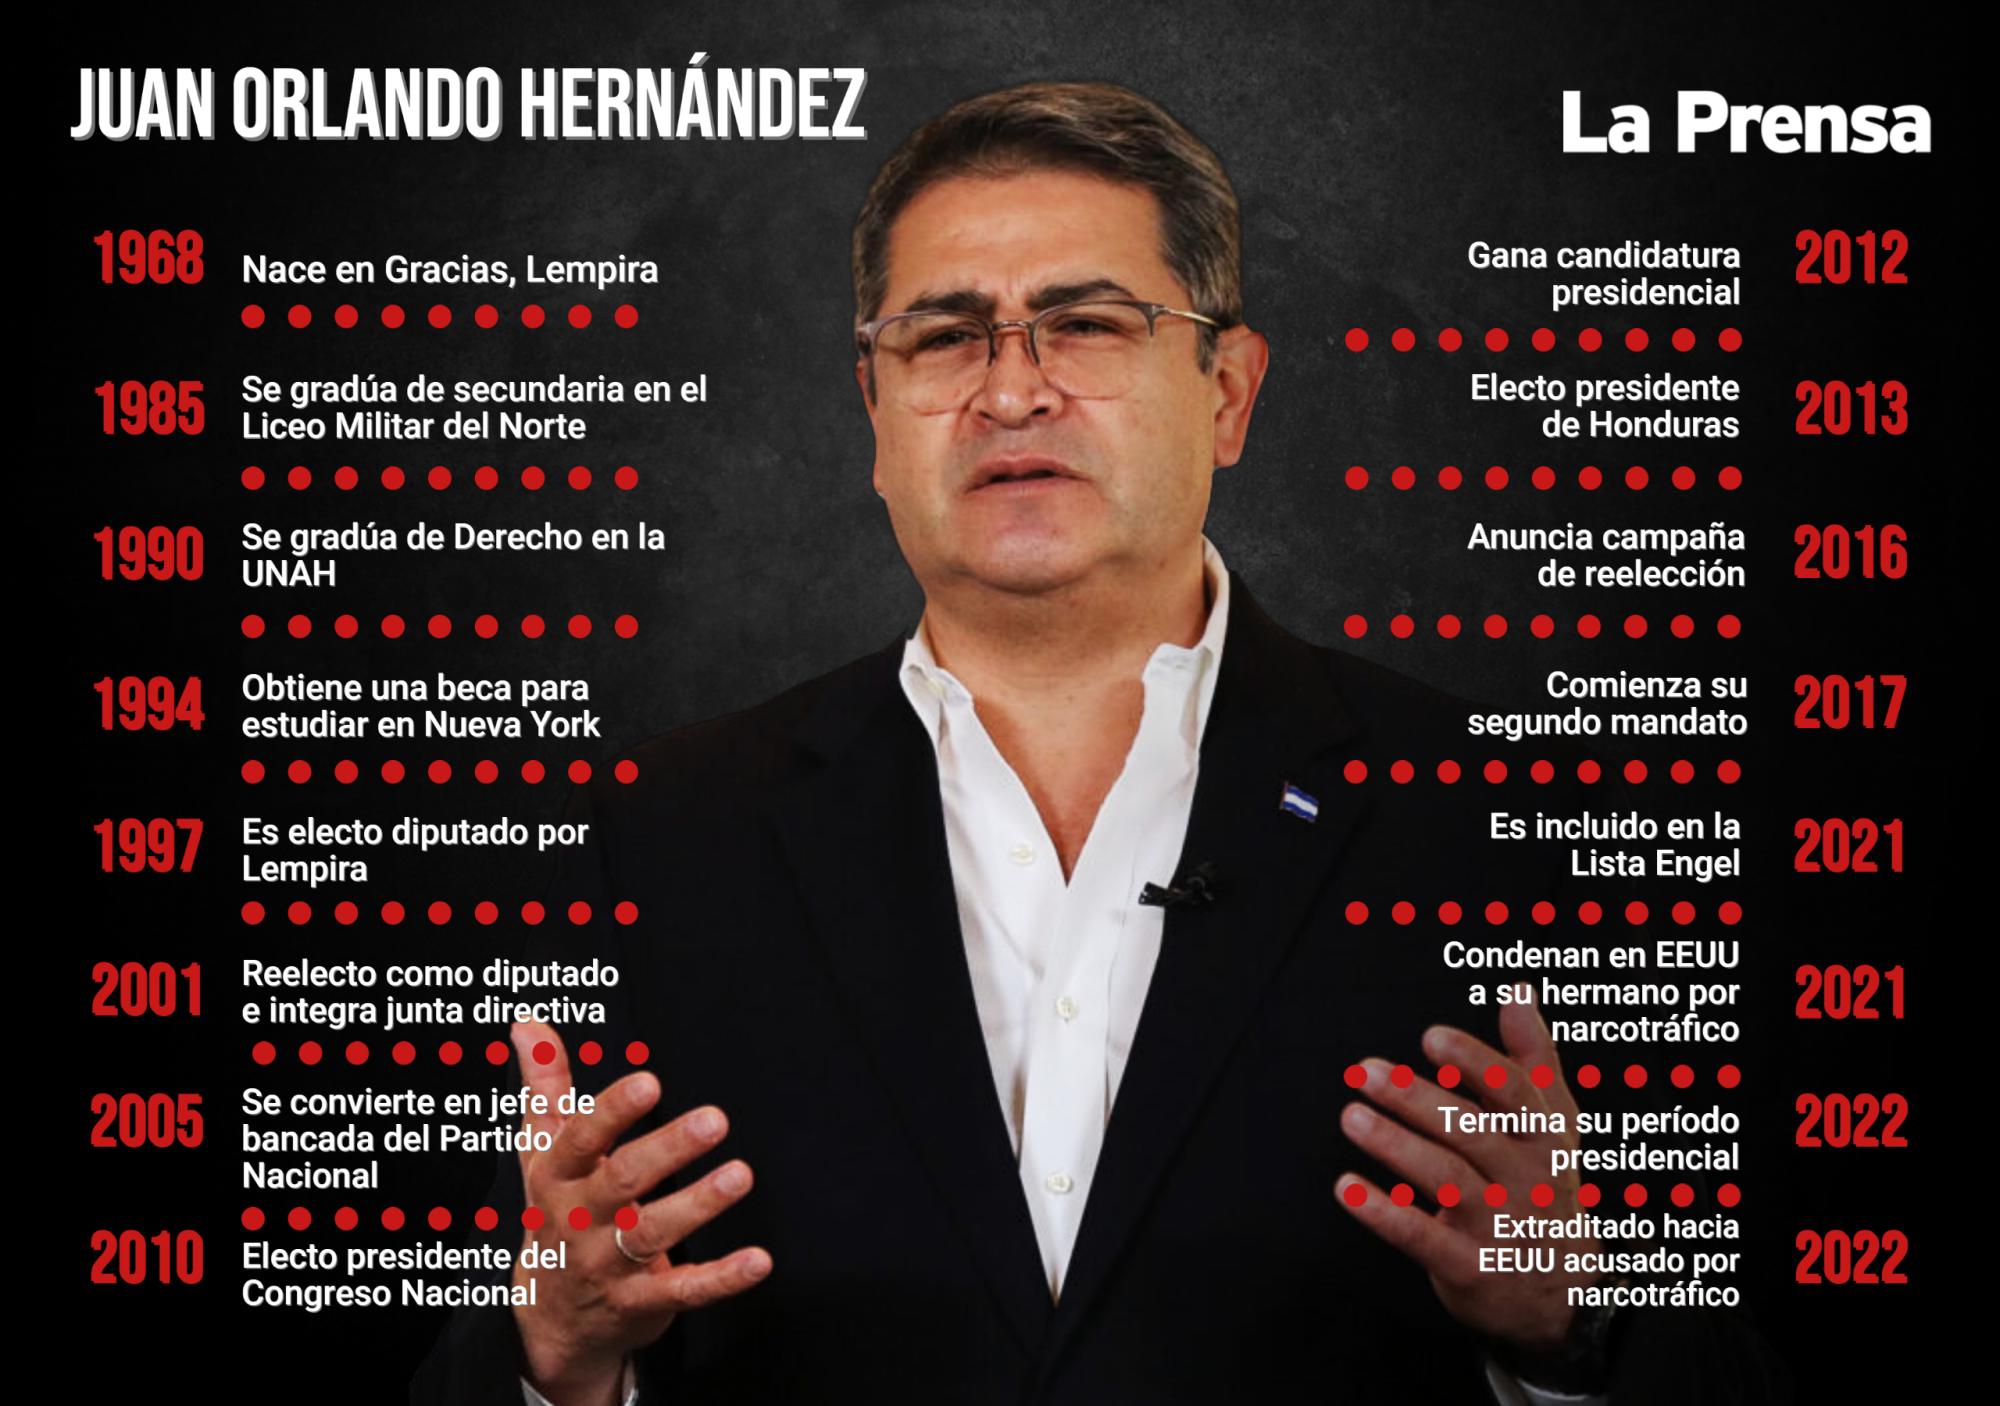 La trayectoria de Juan Orlando Hernández.